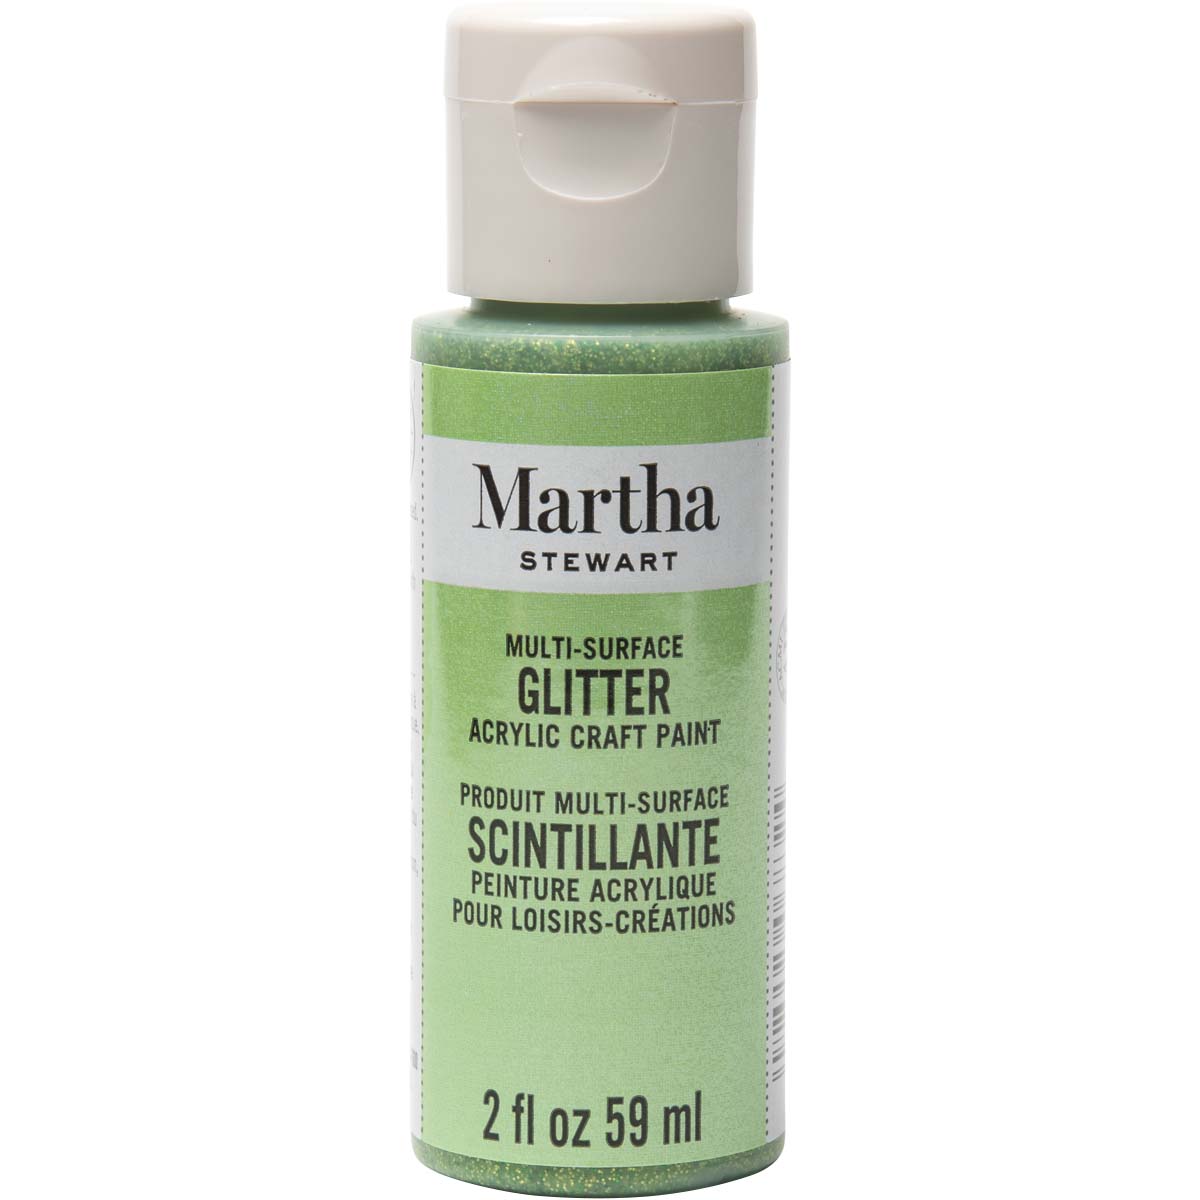 Martha Stewart ® Multi-Surface Glitter Acrylic Craft Paint - Peridot, 2 oz. - 32160CA